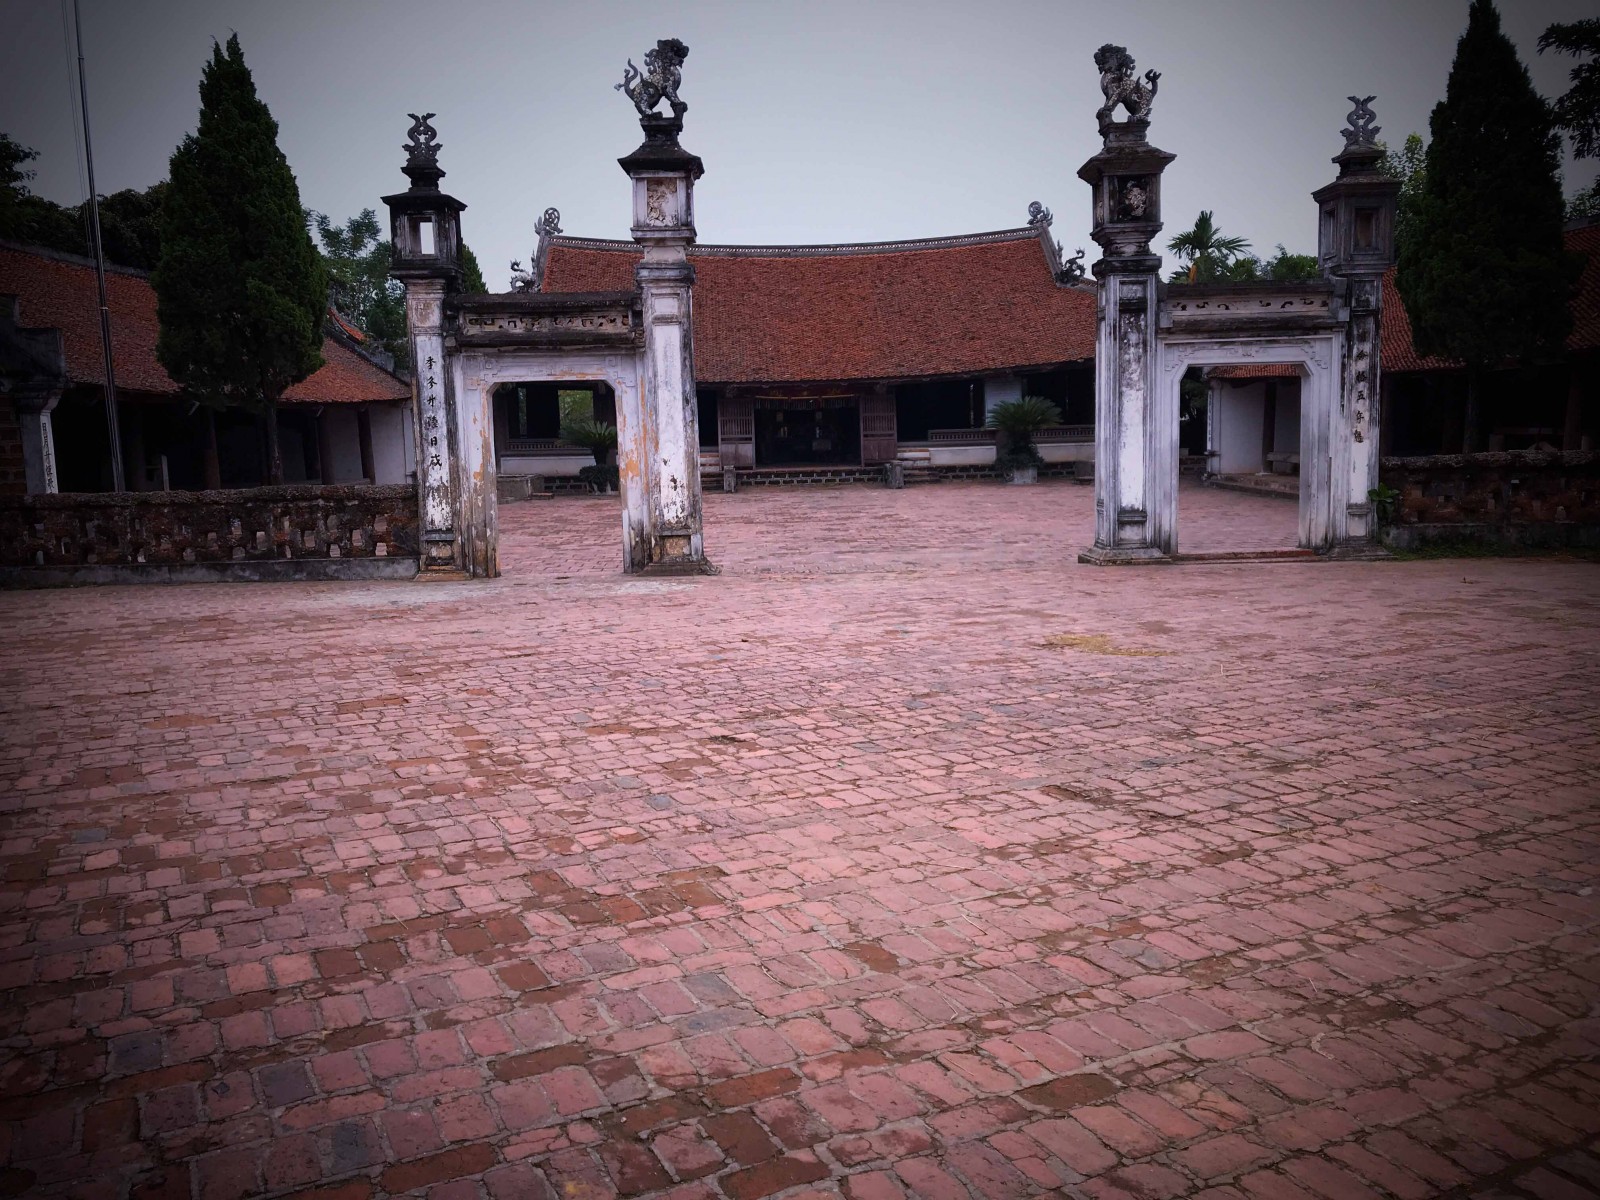 Đình làng Mông Phụ 5 gian, hai chái, kiến trúc kiểu nhà sàn người Mường với gần 50 cột gỗ lớn nhỏ được xây dựng năm 1653, một trong những ngôi đình cổ nhất Việt Nam còn lại đến ngày nay.